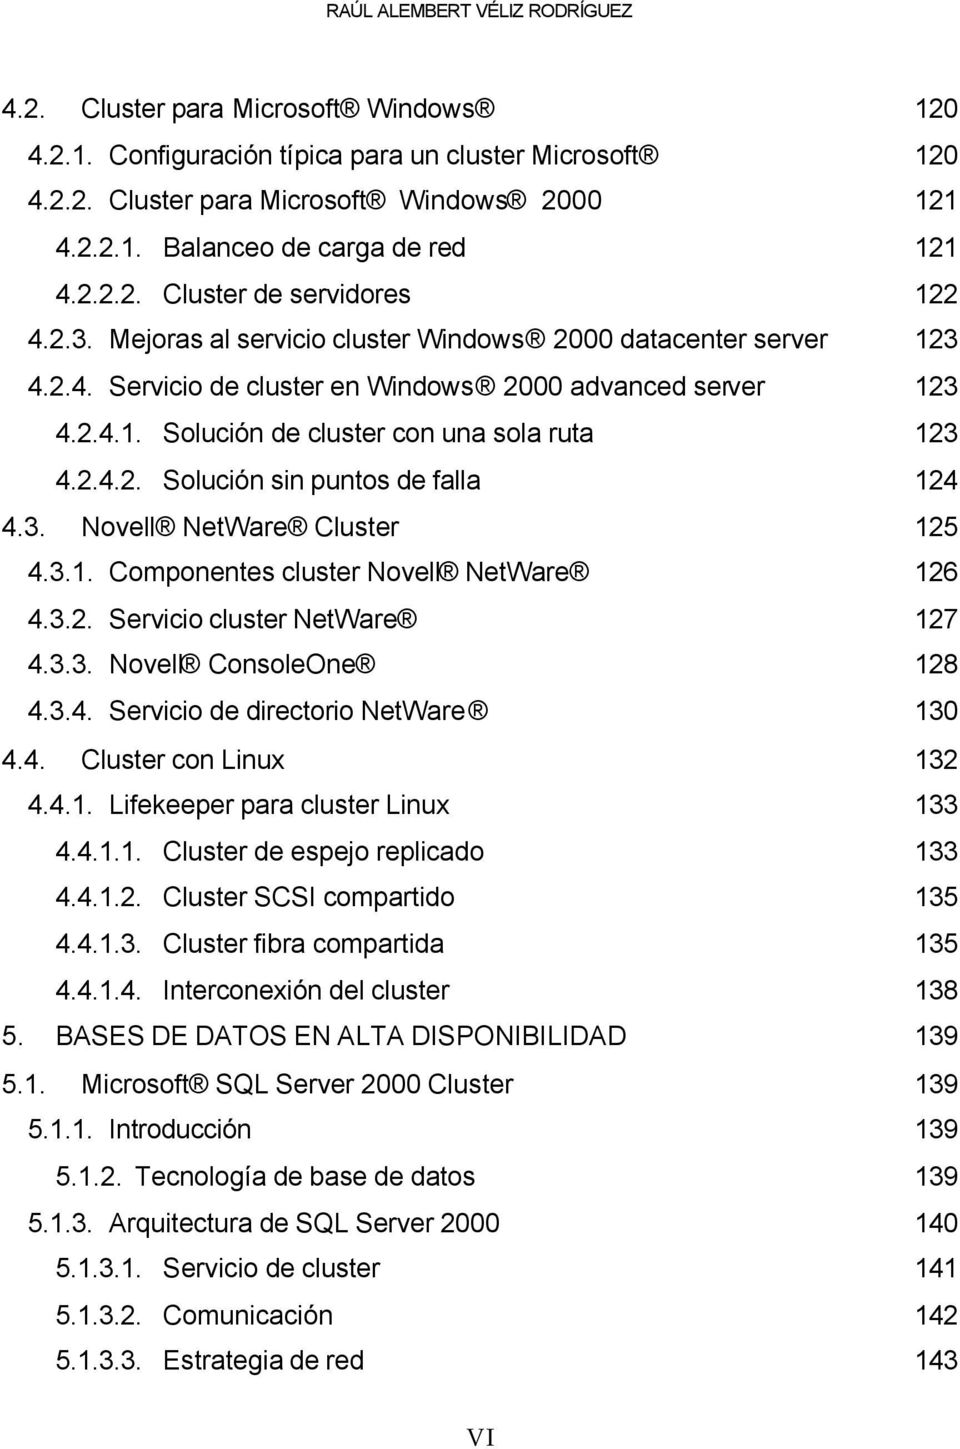 2.4.2. Solución sin puntos de falla 124 4.3. Novell NetWare Cluster 125 4.3.1. Componentes cluster Novell NetWare 126 4.3.2. Servicio cluster NetWare 127 4.3.3. Novell ConsoleOne 128 4.3.4. Servicio de directorio NetWare 130 4.